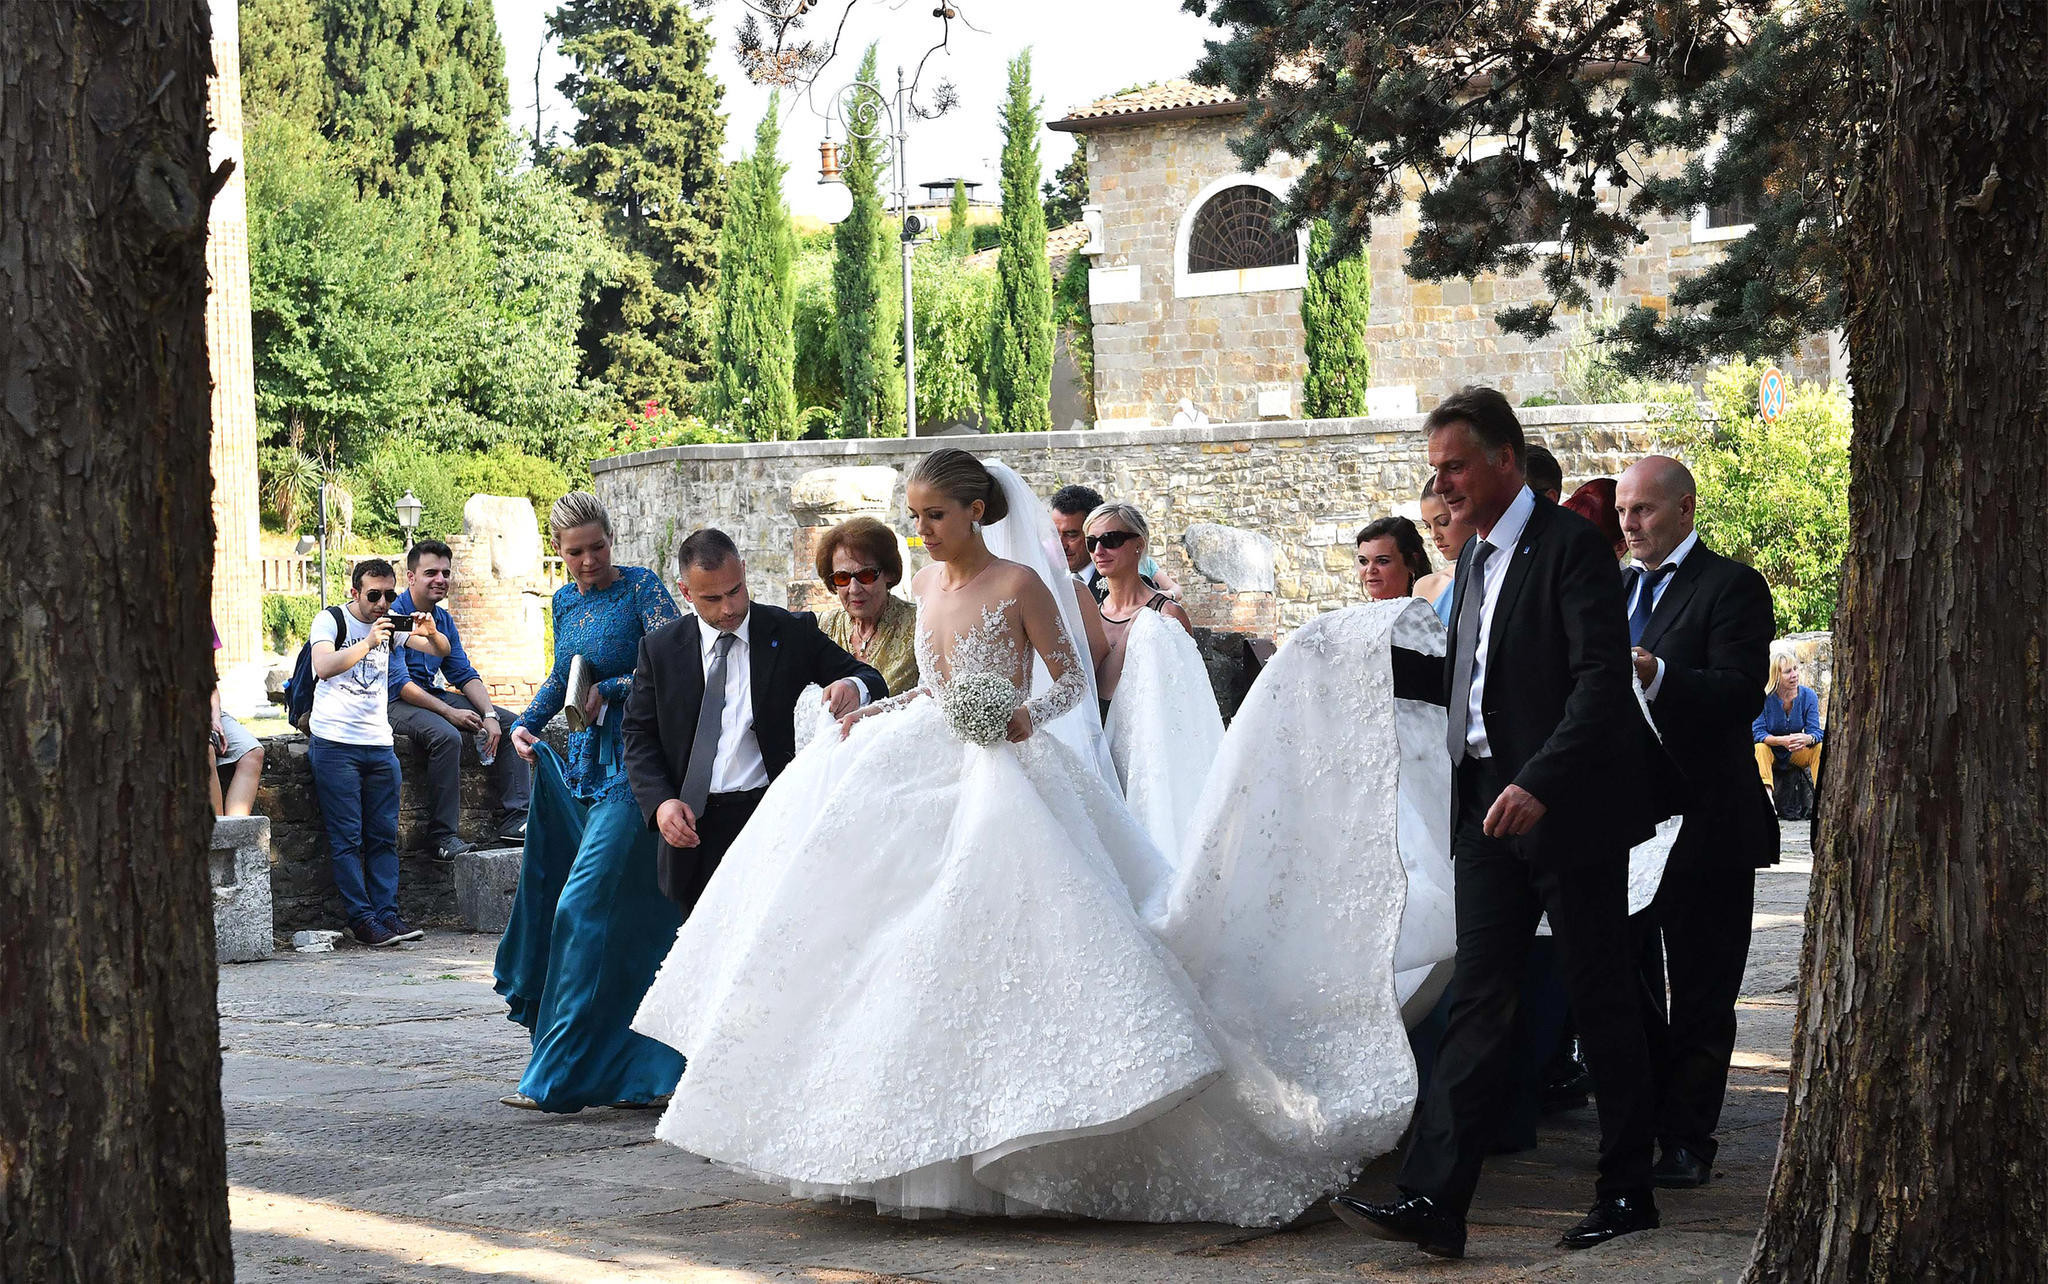 Swarovski Hochzeitskleid
 Victoria Swarovski ALLE Details zu ihrem Brautkleid